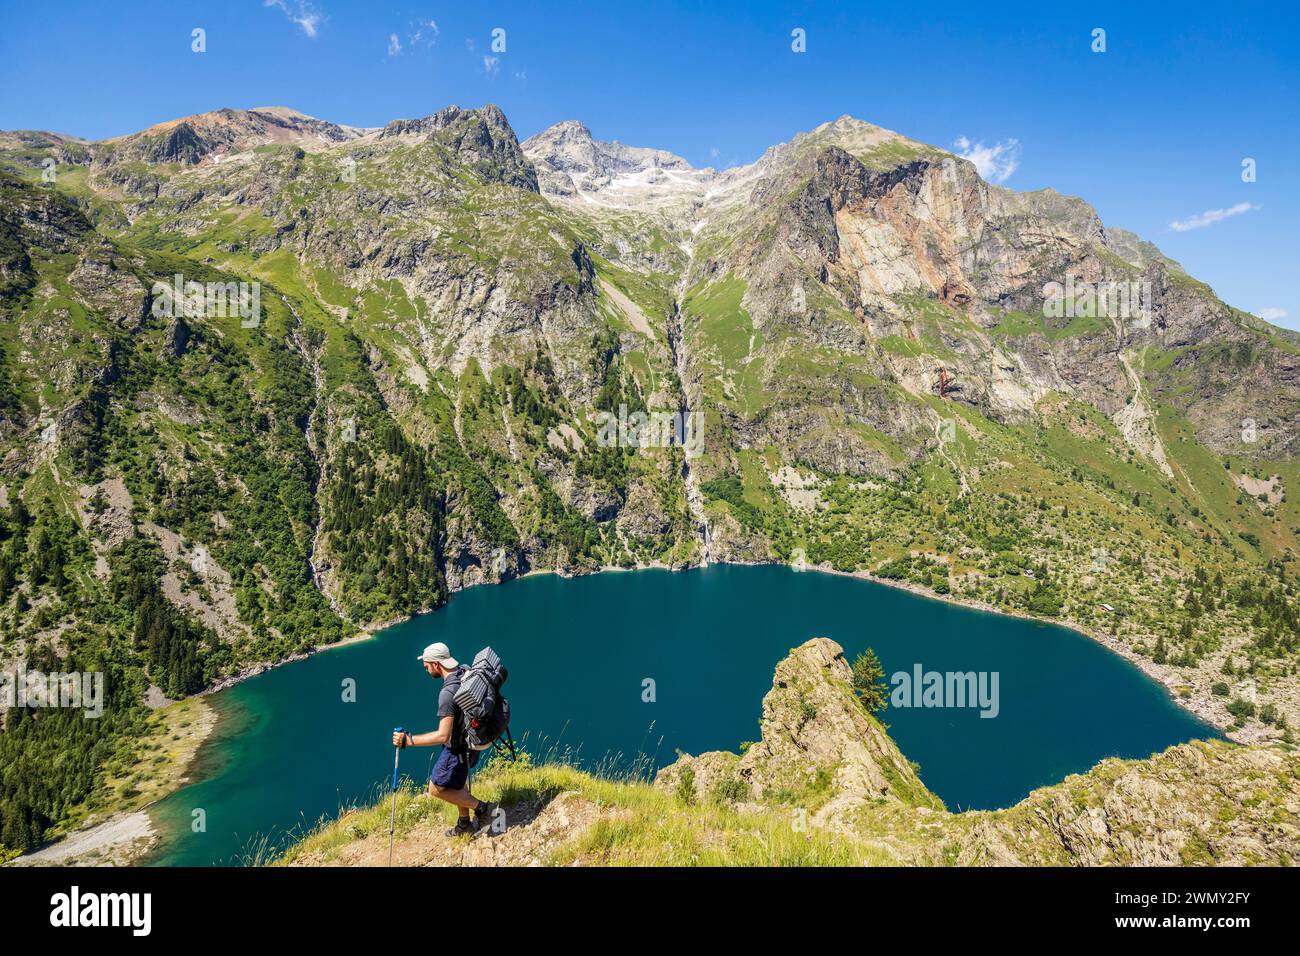 Francia, Isère, Parco Nazionale Ecrins, valle Vénéon, lago Lauvitel (1530 m), escursionista sul sentiero GR 54, Tour de l'Oisans ed Ecrins Foto Stock